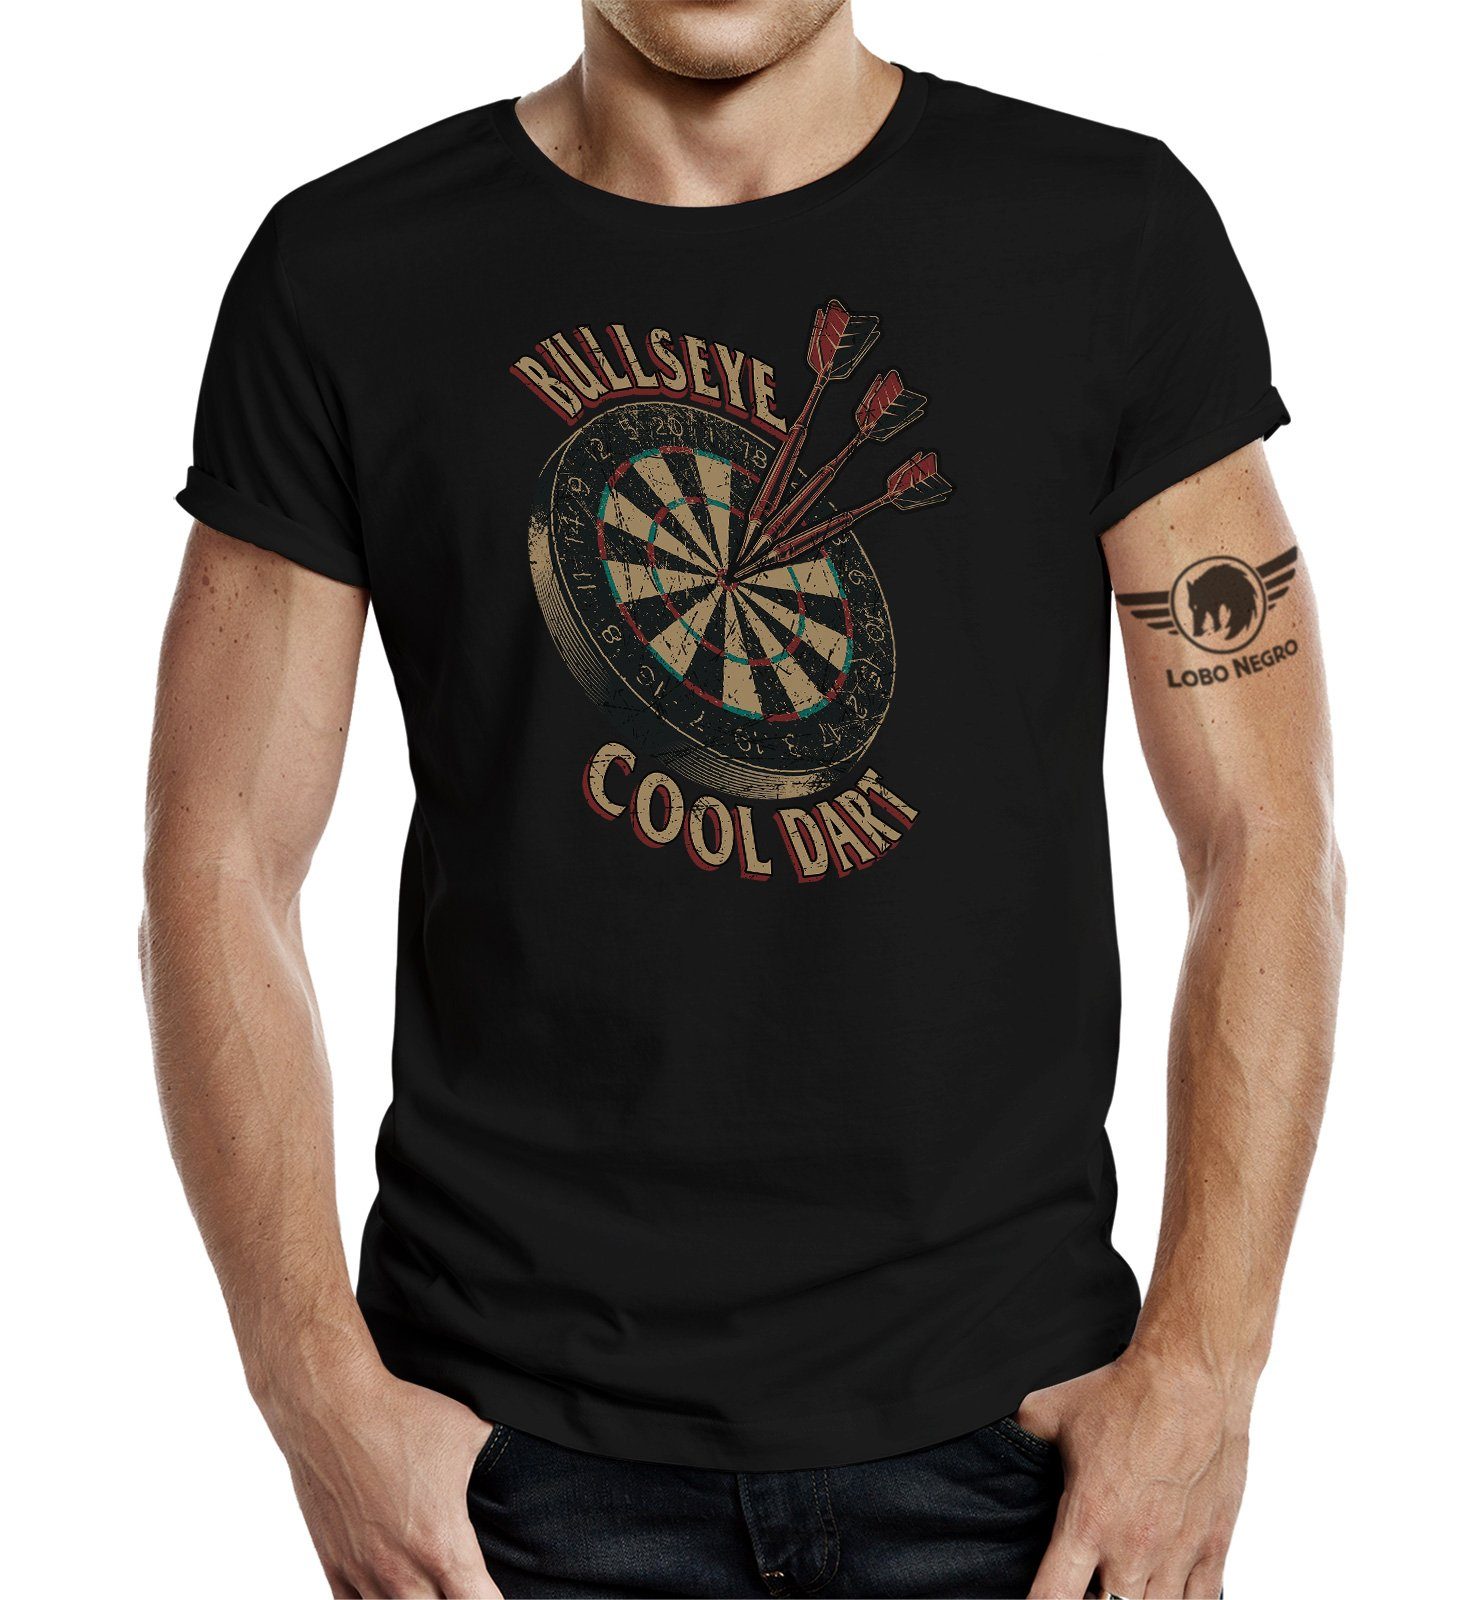 LOBO NEGRO® T-Shirt im Original Design für den Dart Fan: Bulls-Eye Cool Dart